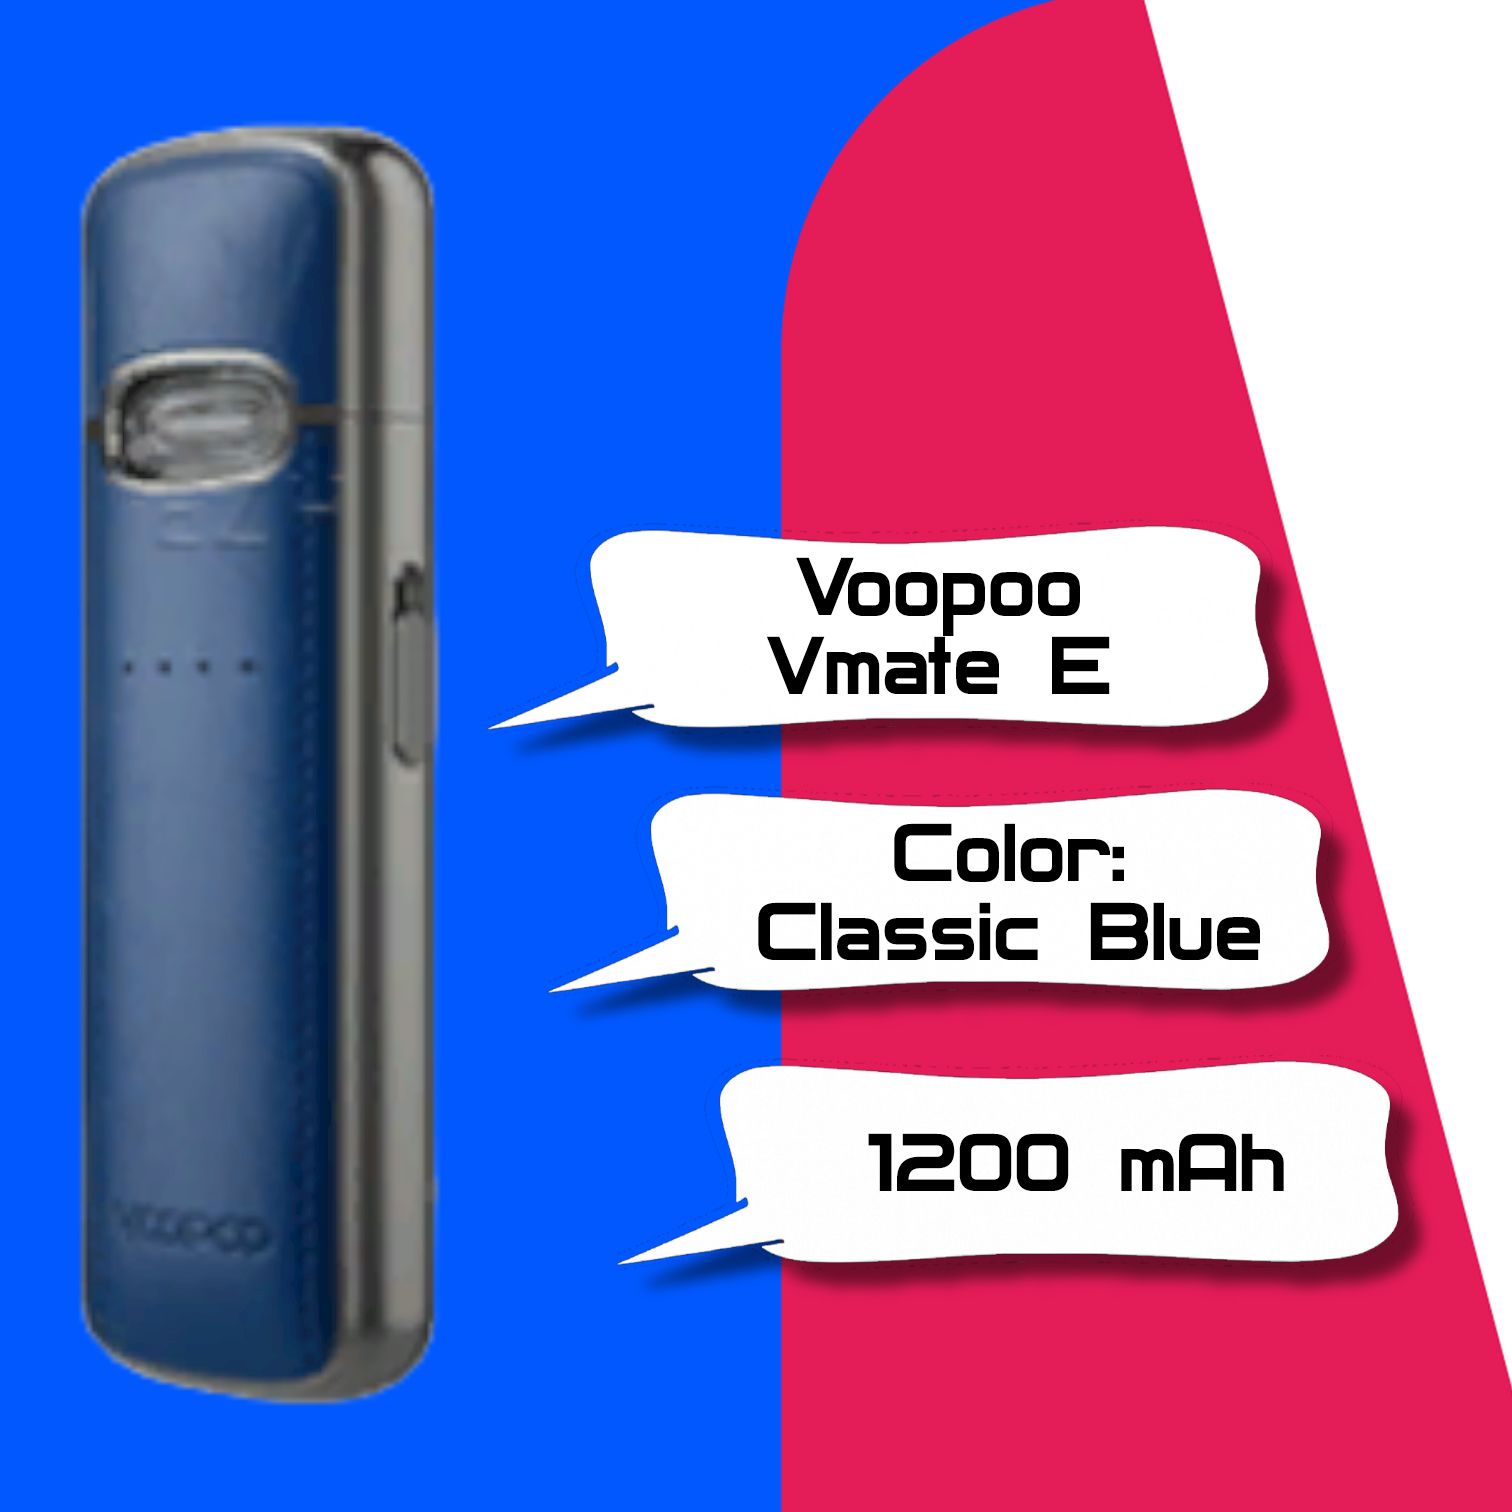 Vmate e цена. VOOPOO VMATE E 1200mah (Classic Blue). VOOPOO VMATE E 1200mah pod Kit. VOOPOO VMATE E испаритель. VOOPOO VMATE Pro Kit.